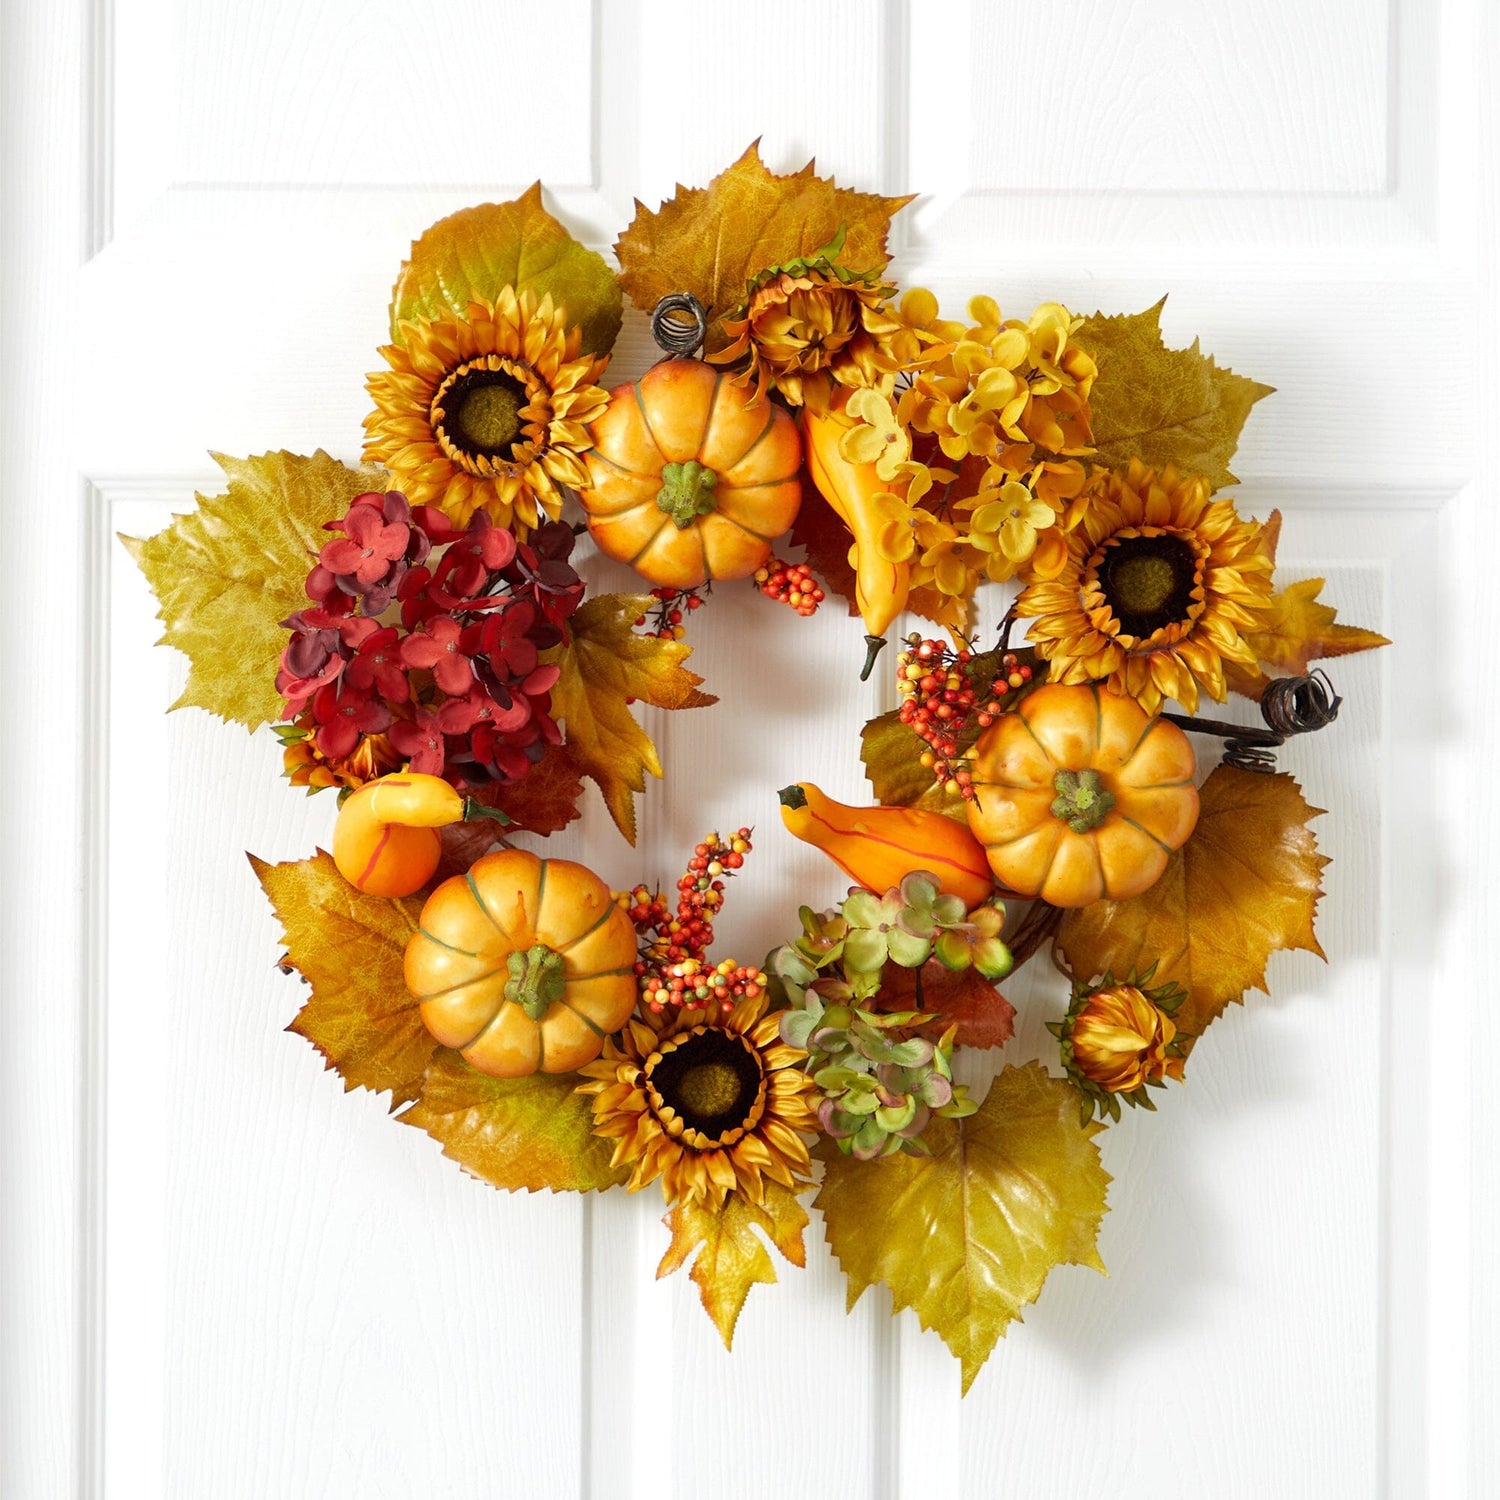 22” Autumn Hydrangea, Pumpkin and Sunflower Artificial Fall Wreath